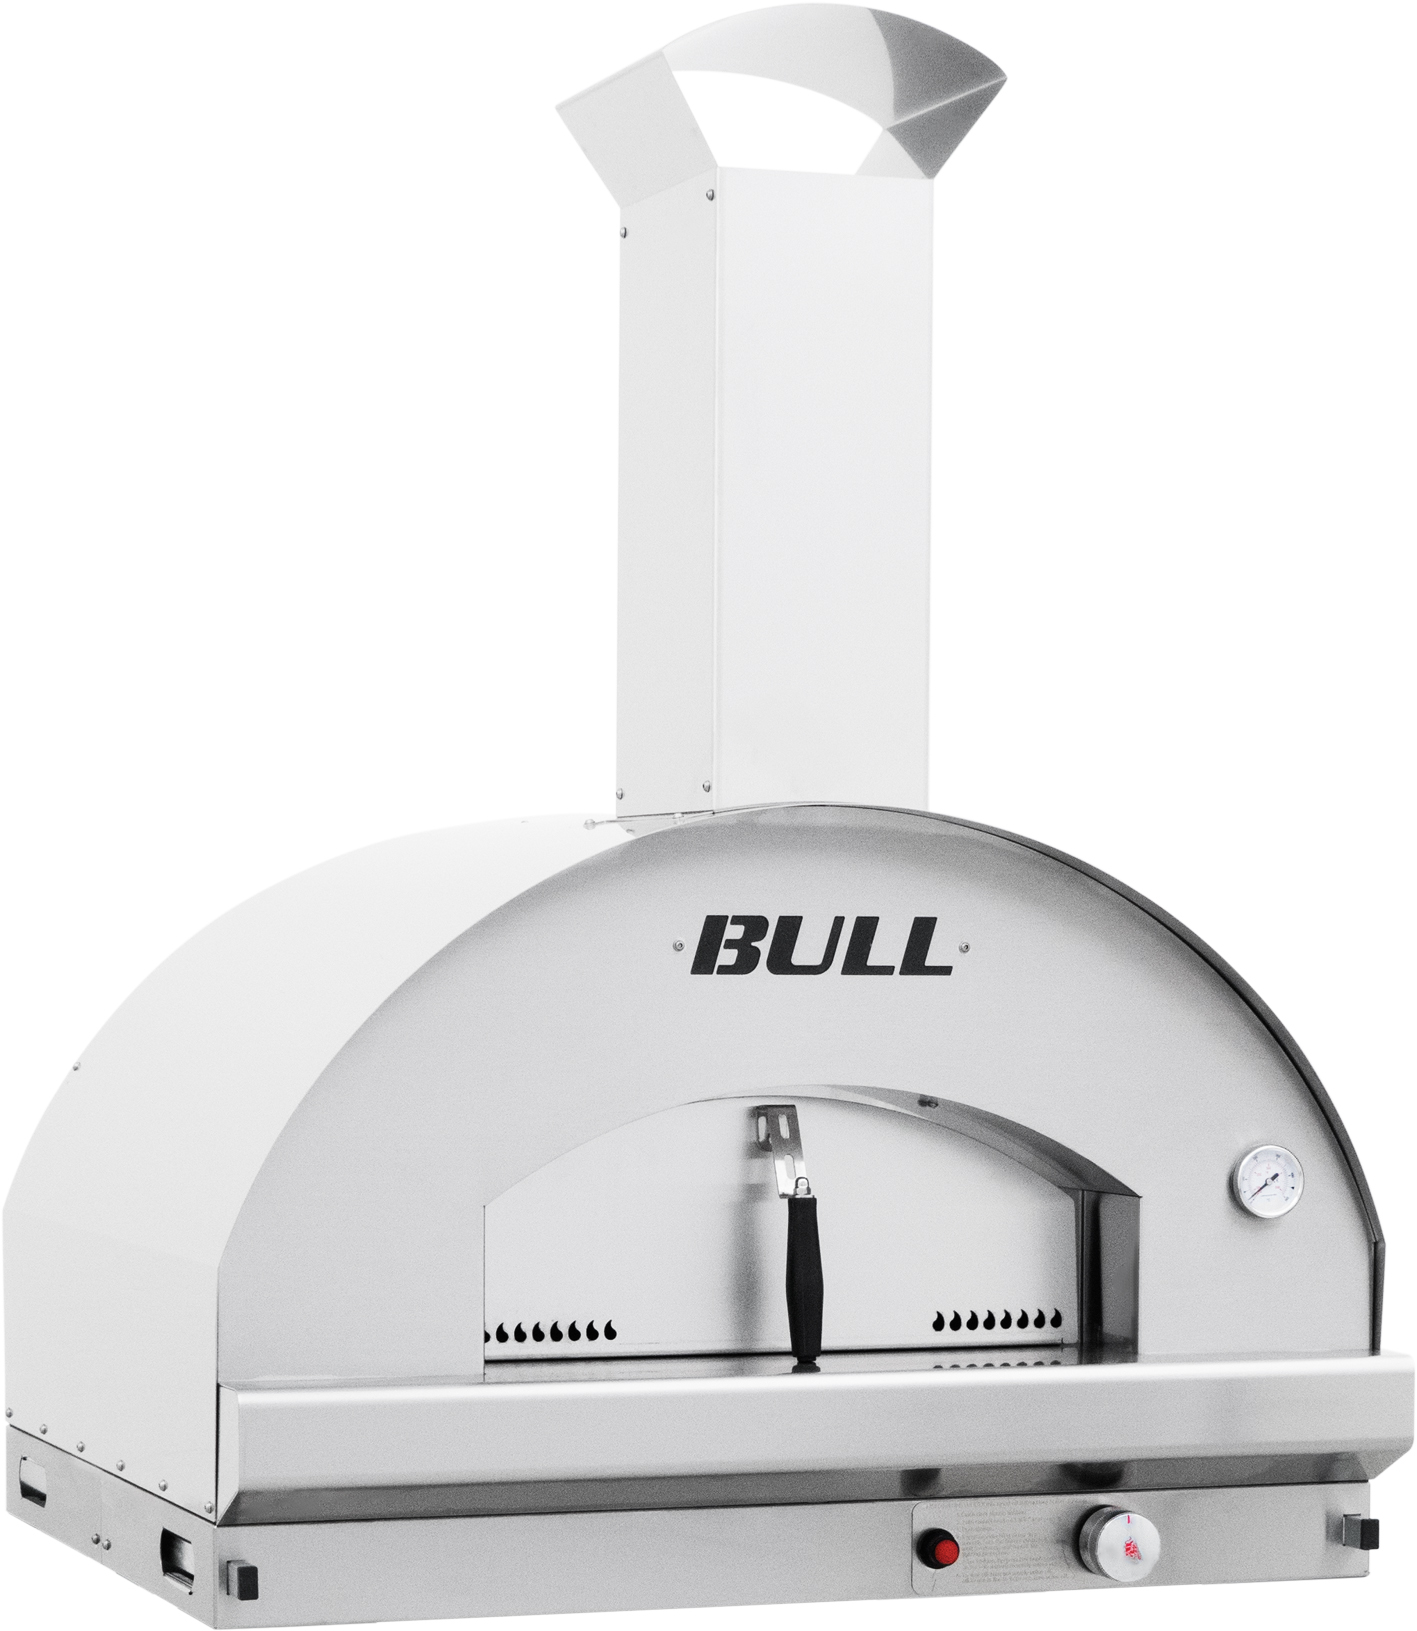 Bull Pizzaofen XL